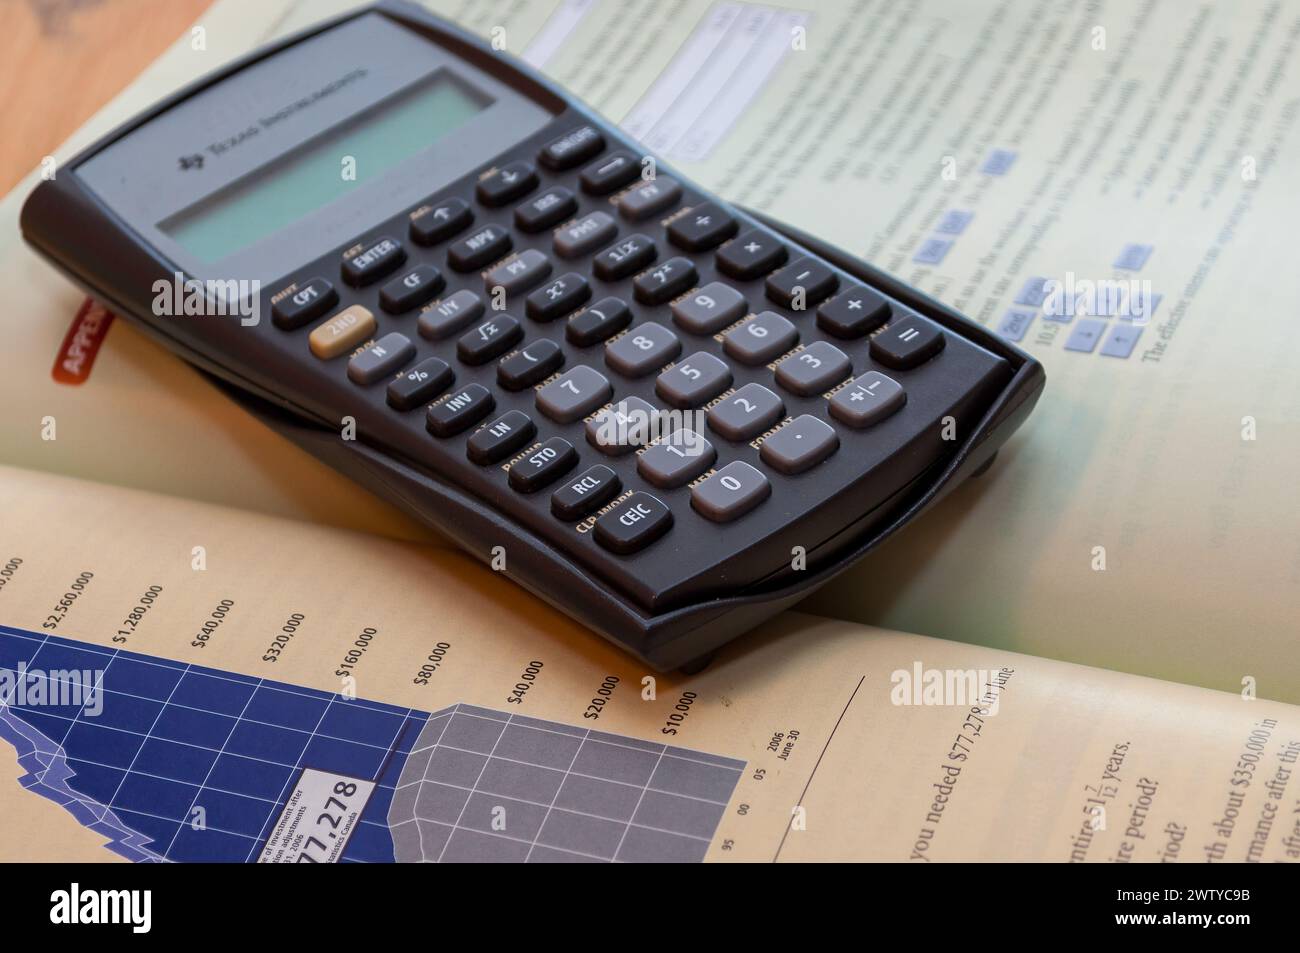 Texas Intruments Taschenrechner auf einem Mathematikbuch Stockfoto